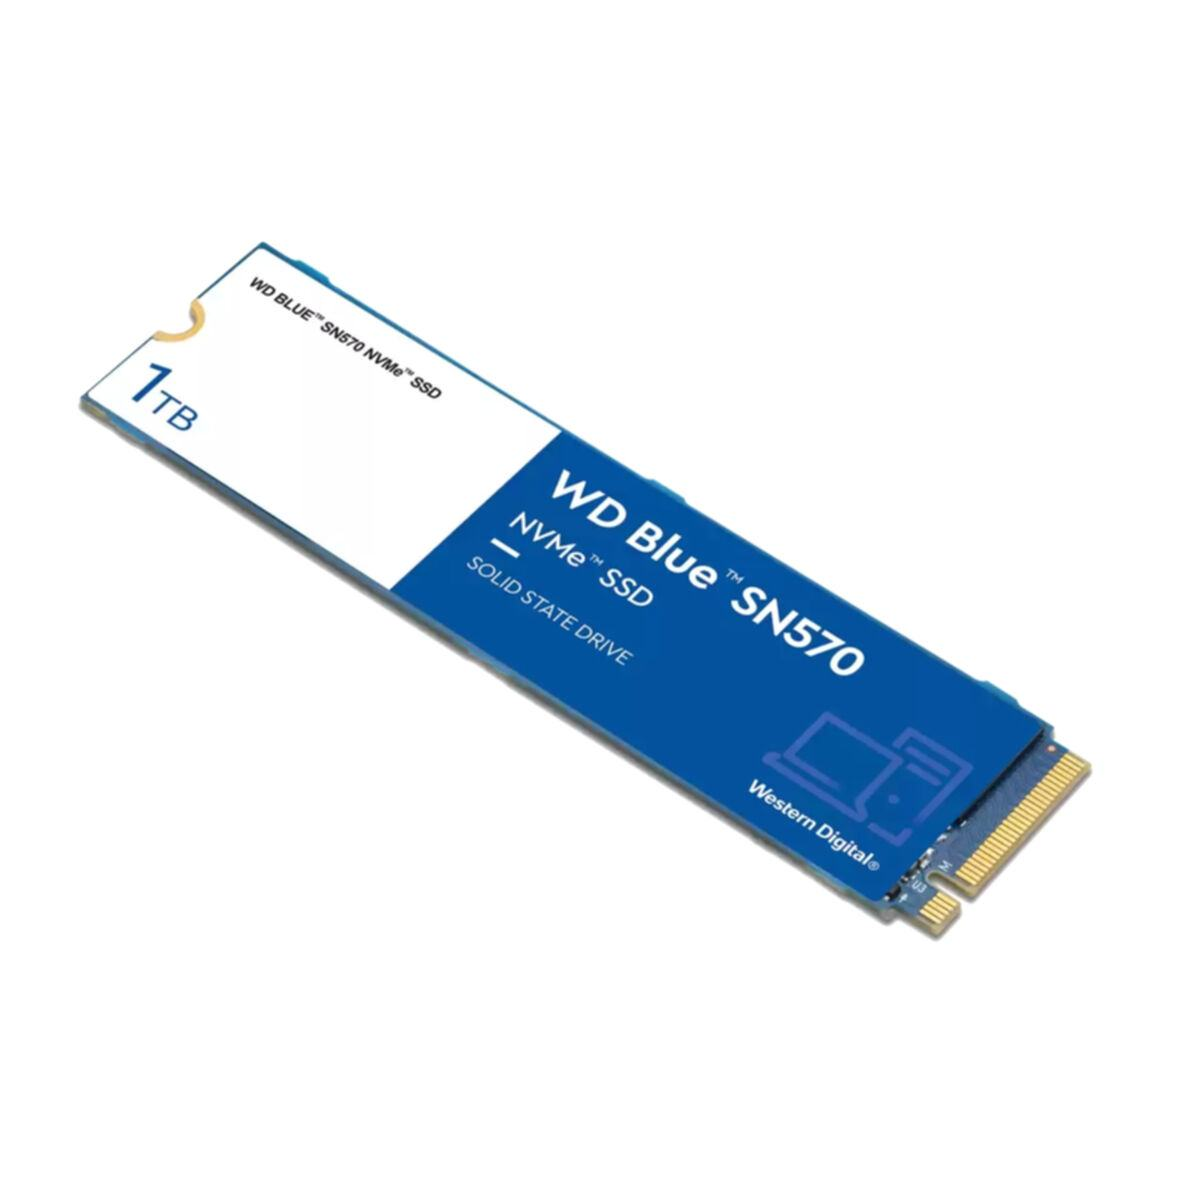 Blue WESTERN WD intern DIGITAL GB, 1000 SN570, SSD,